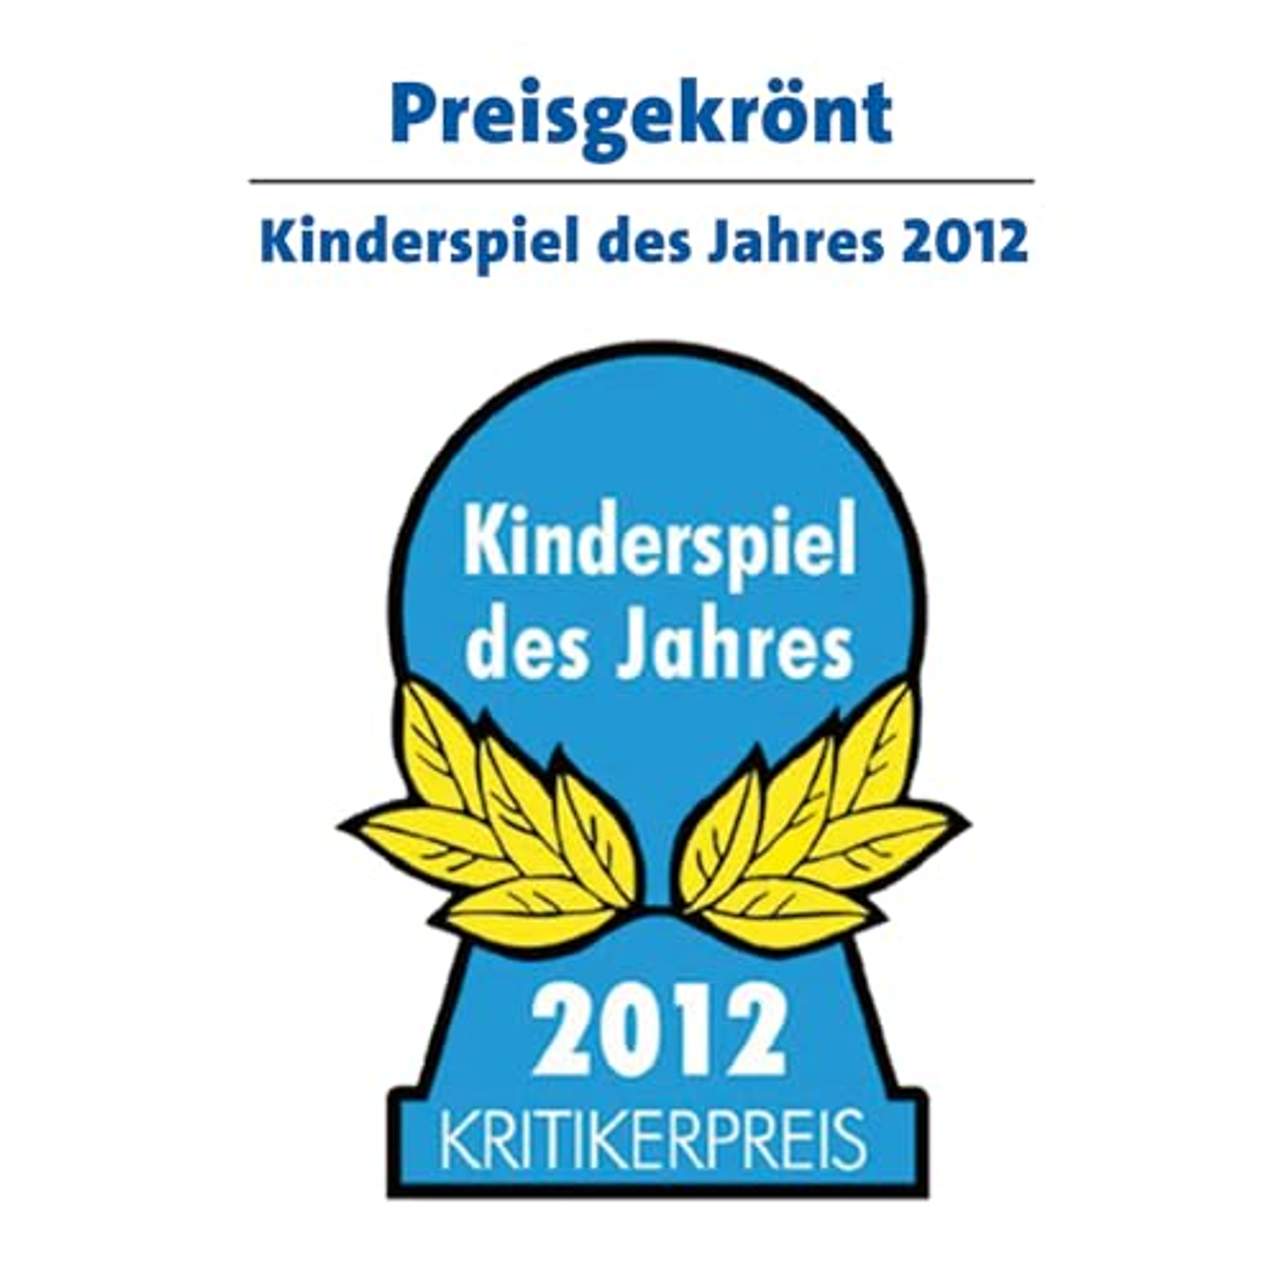 Schnappt Hubi, Kinderspiel des Jahres 2012